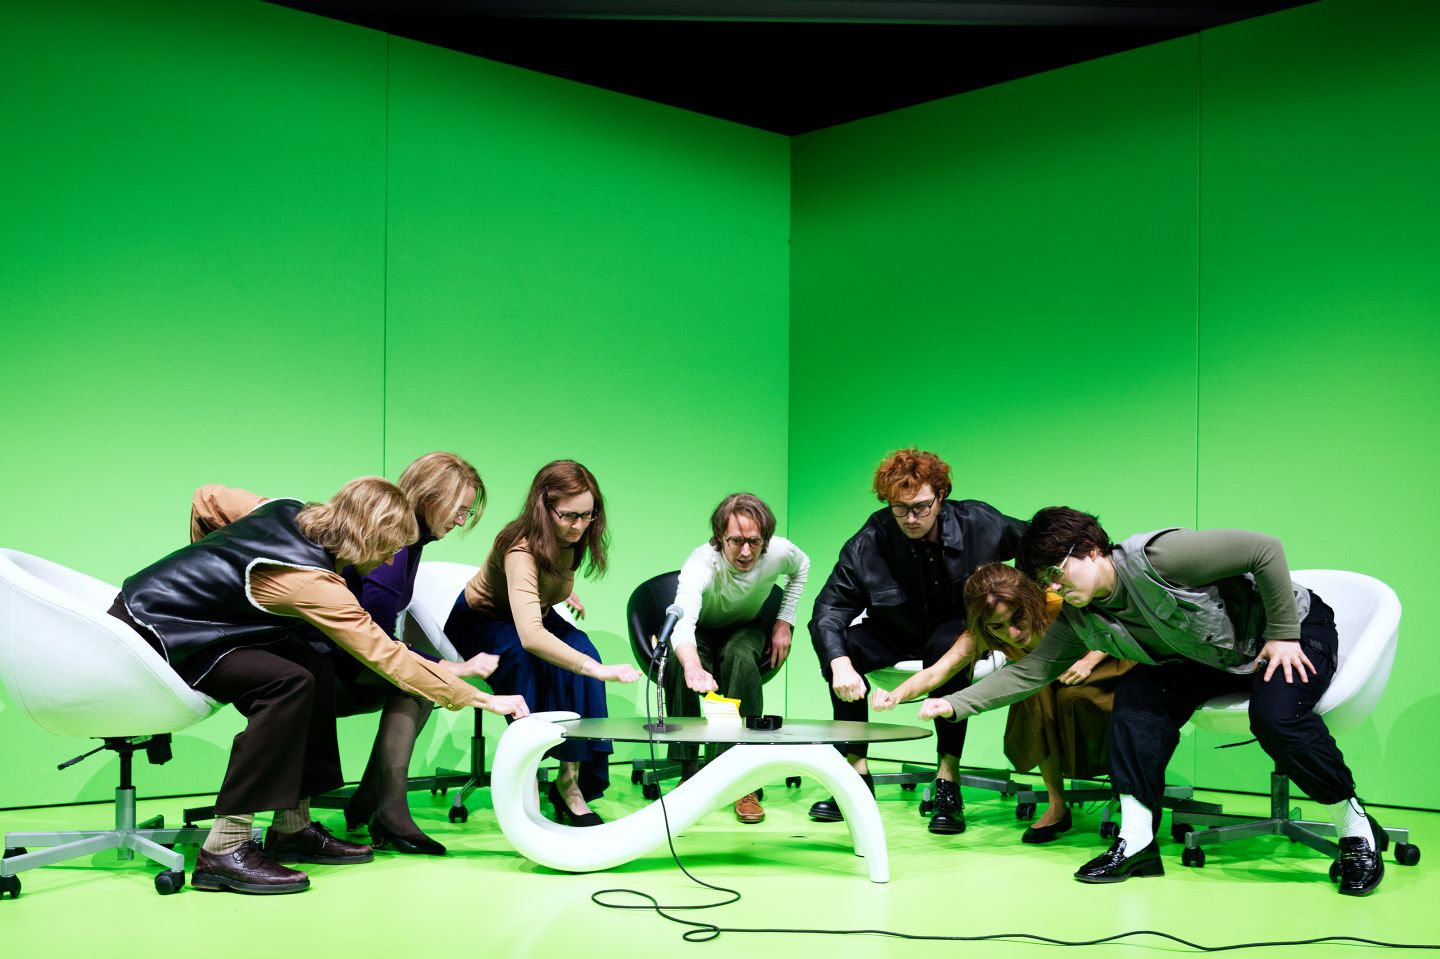 Das Bild zeigt das Ensemble vor einem grünen Hintergrund